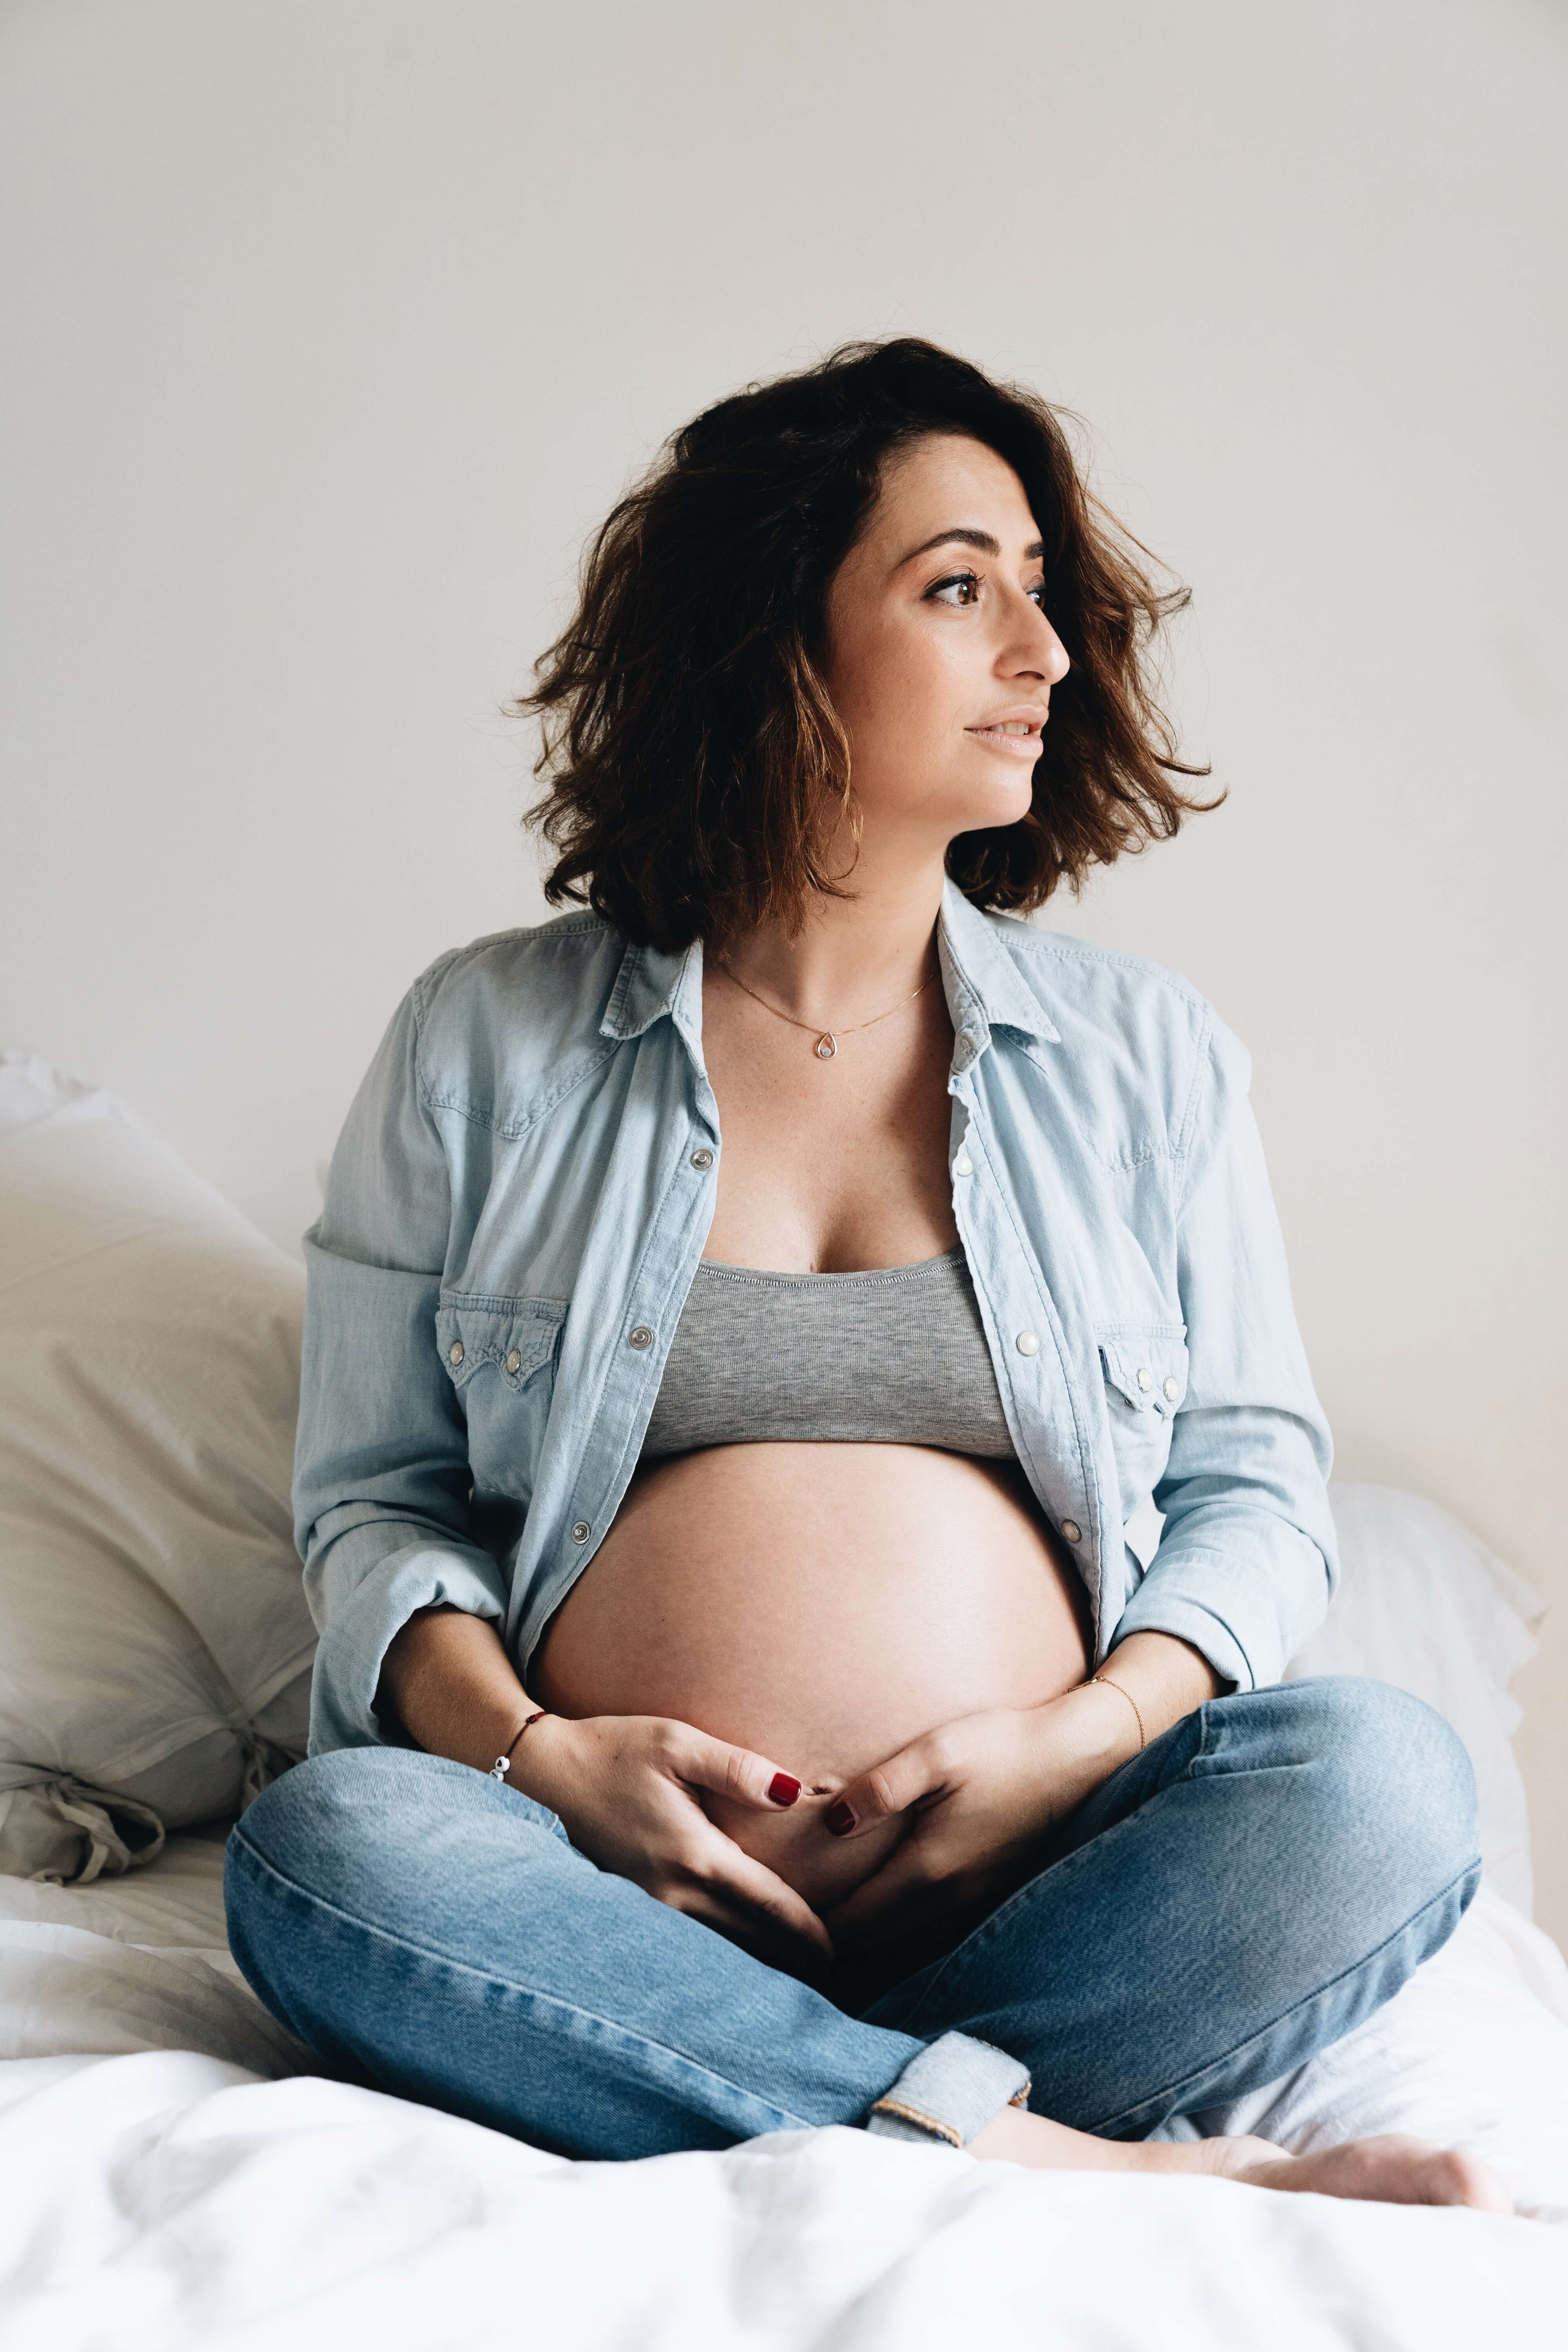 femme enceinte assise en jeans ventre nu